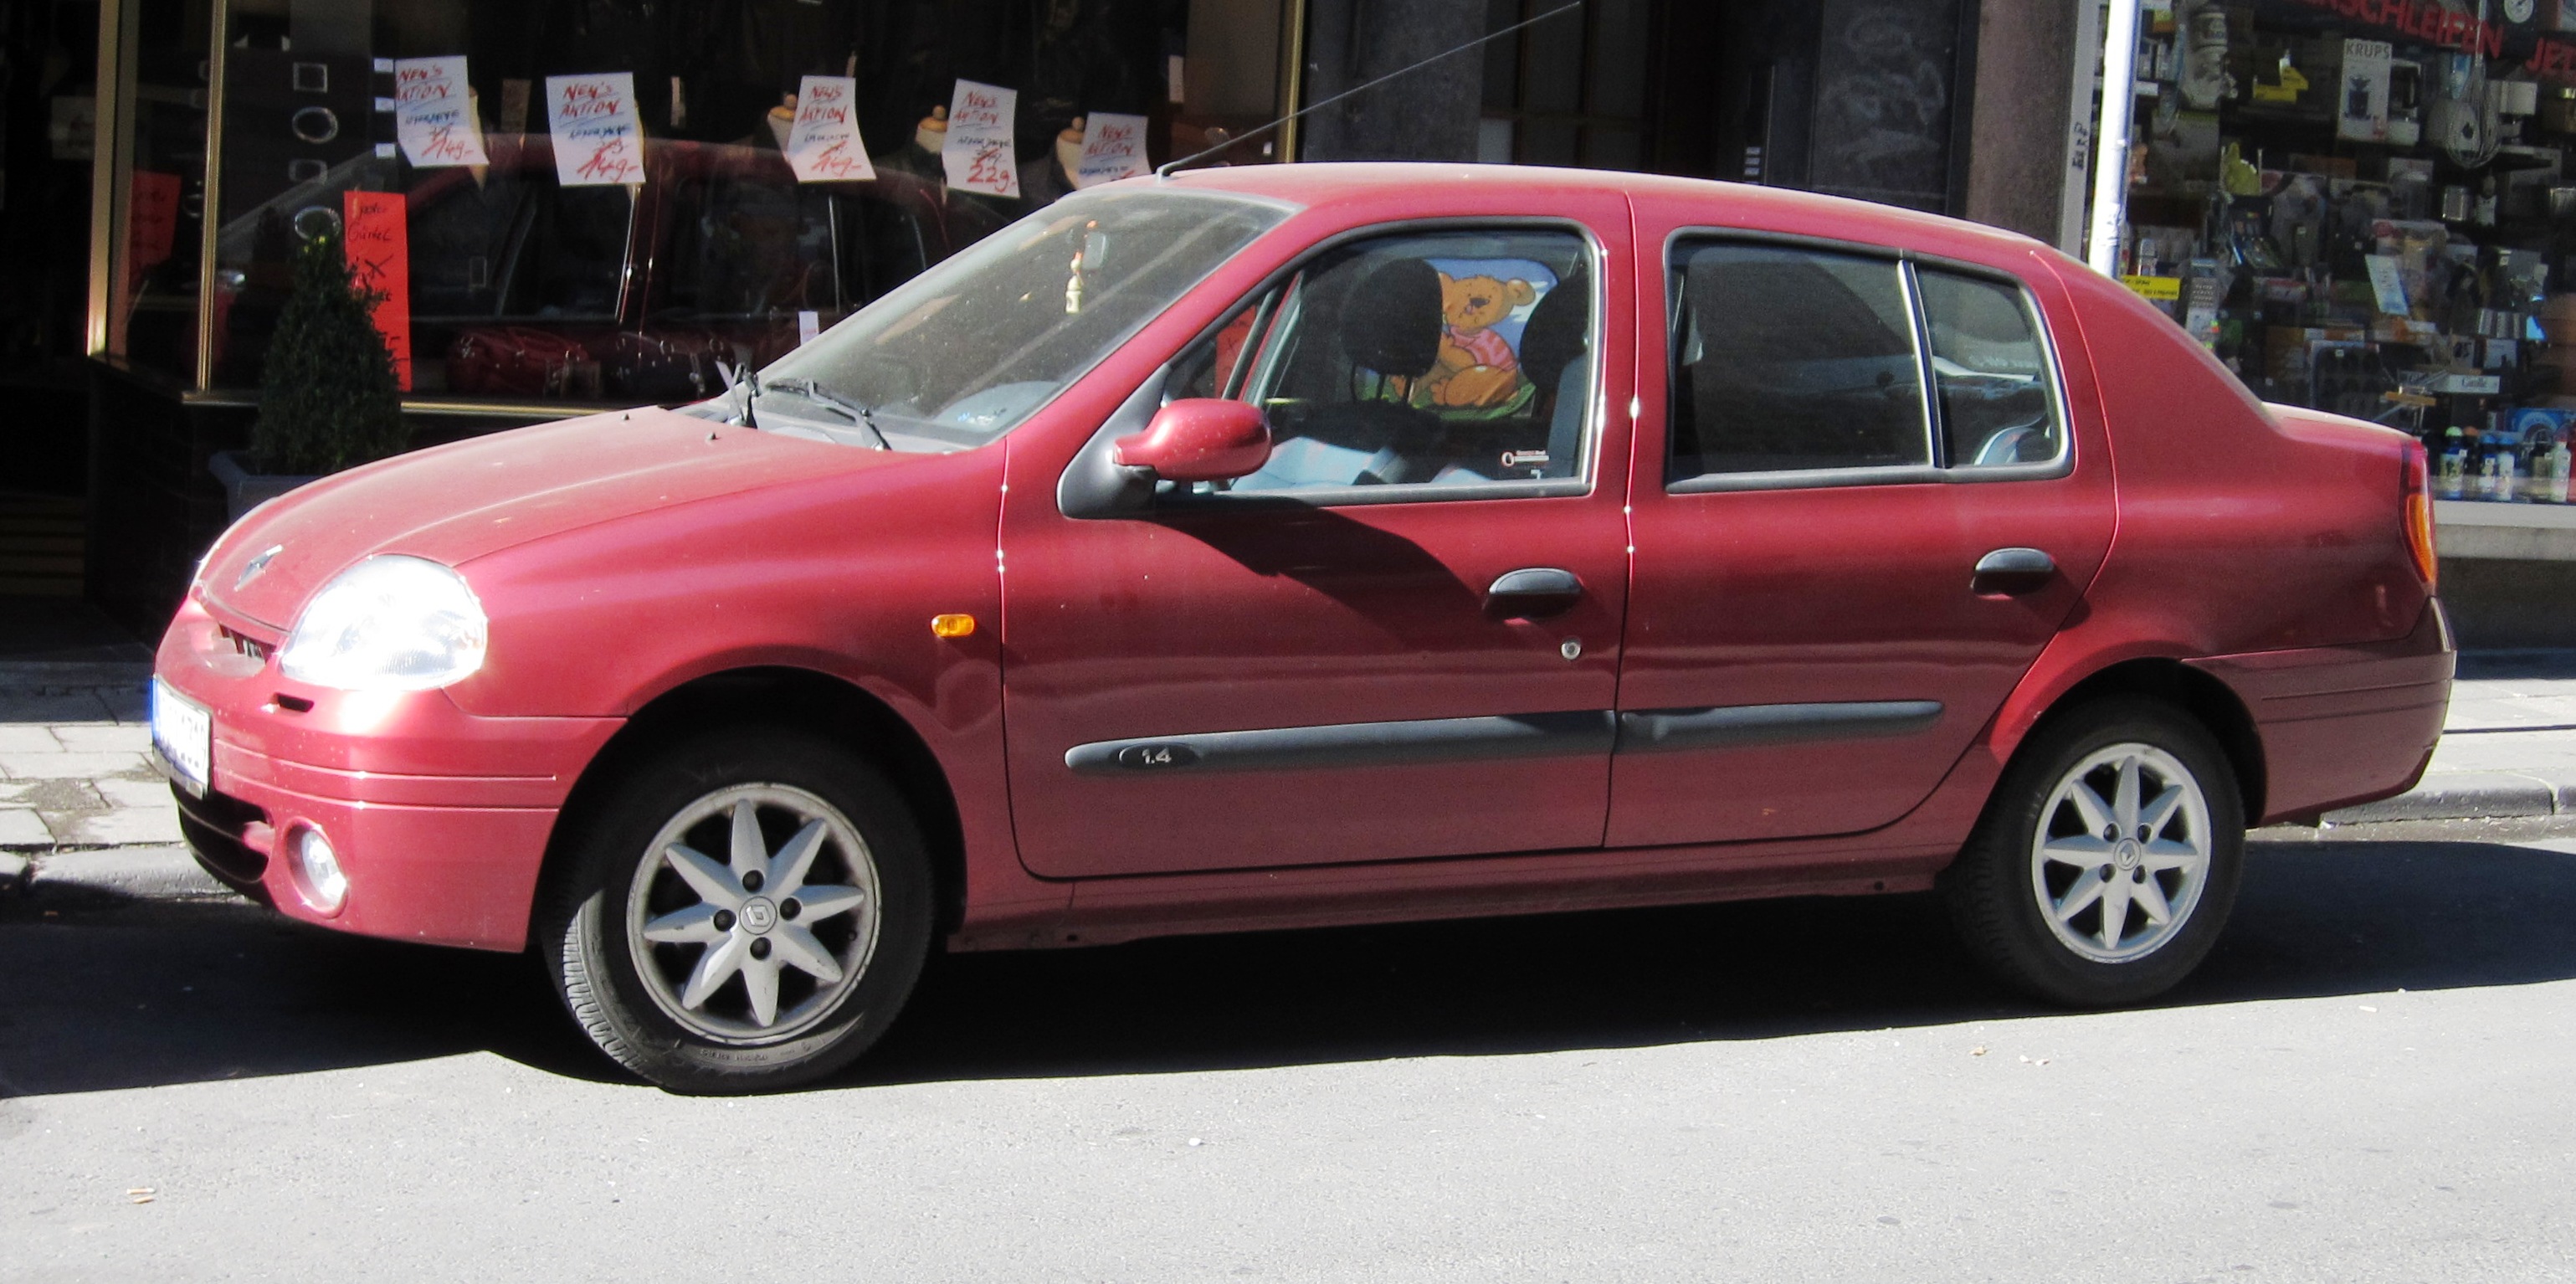 Renault_Clio_4_door_notchback_in_Aachen.jpg